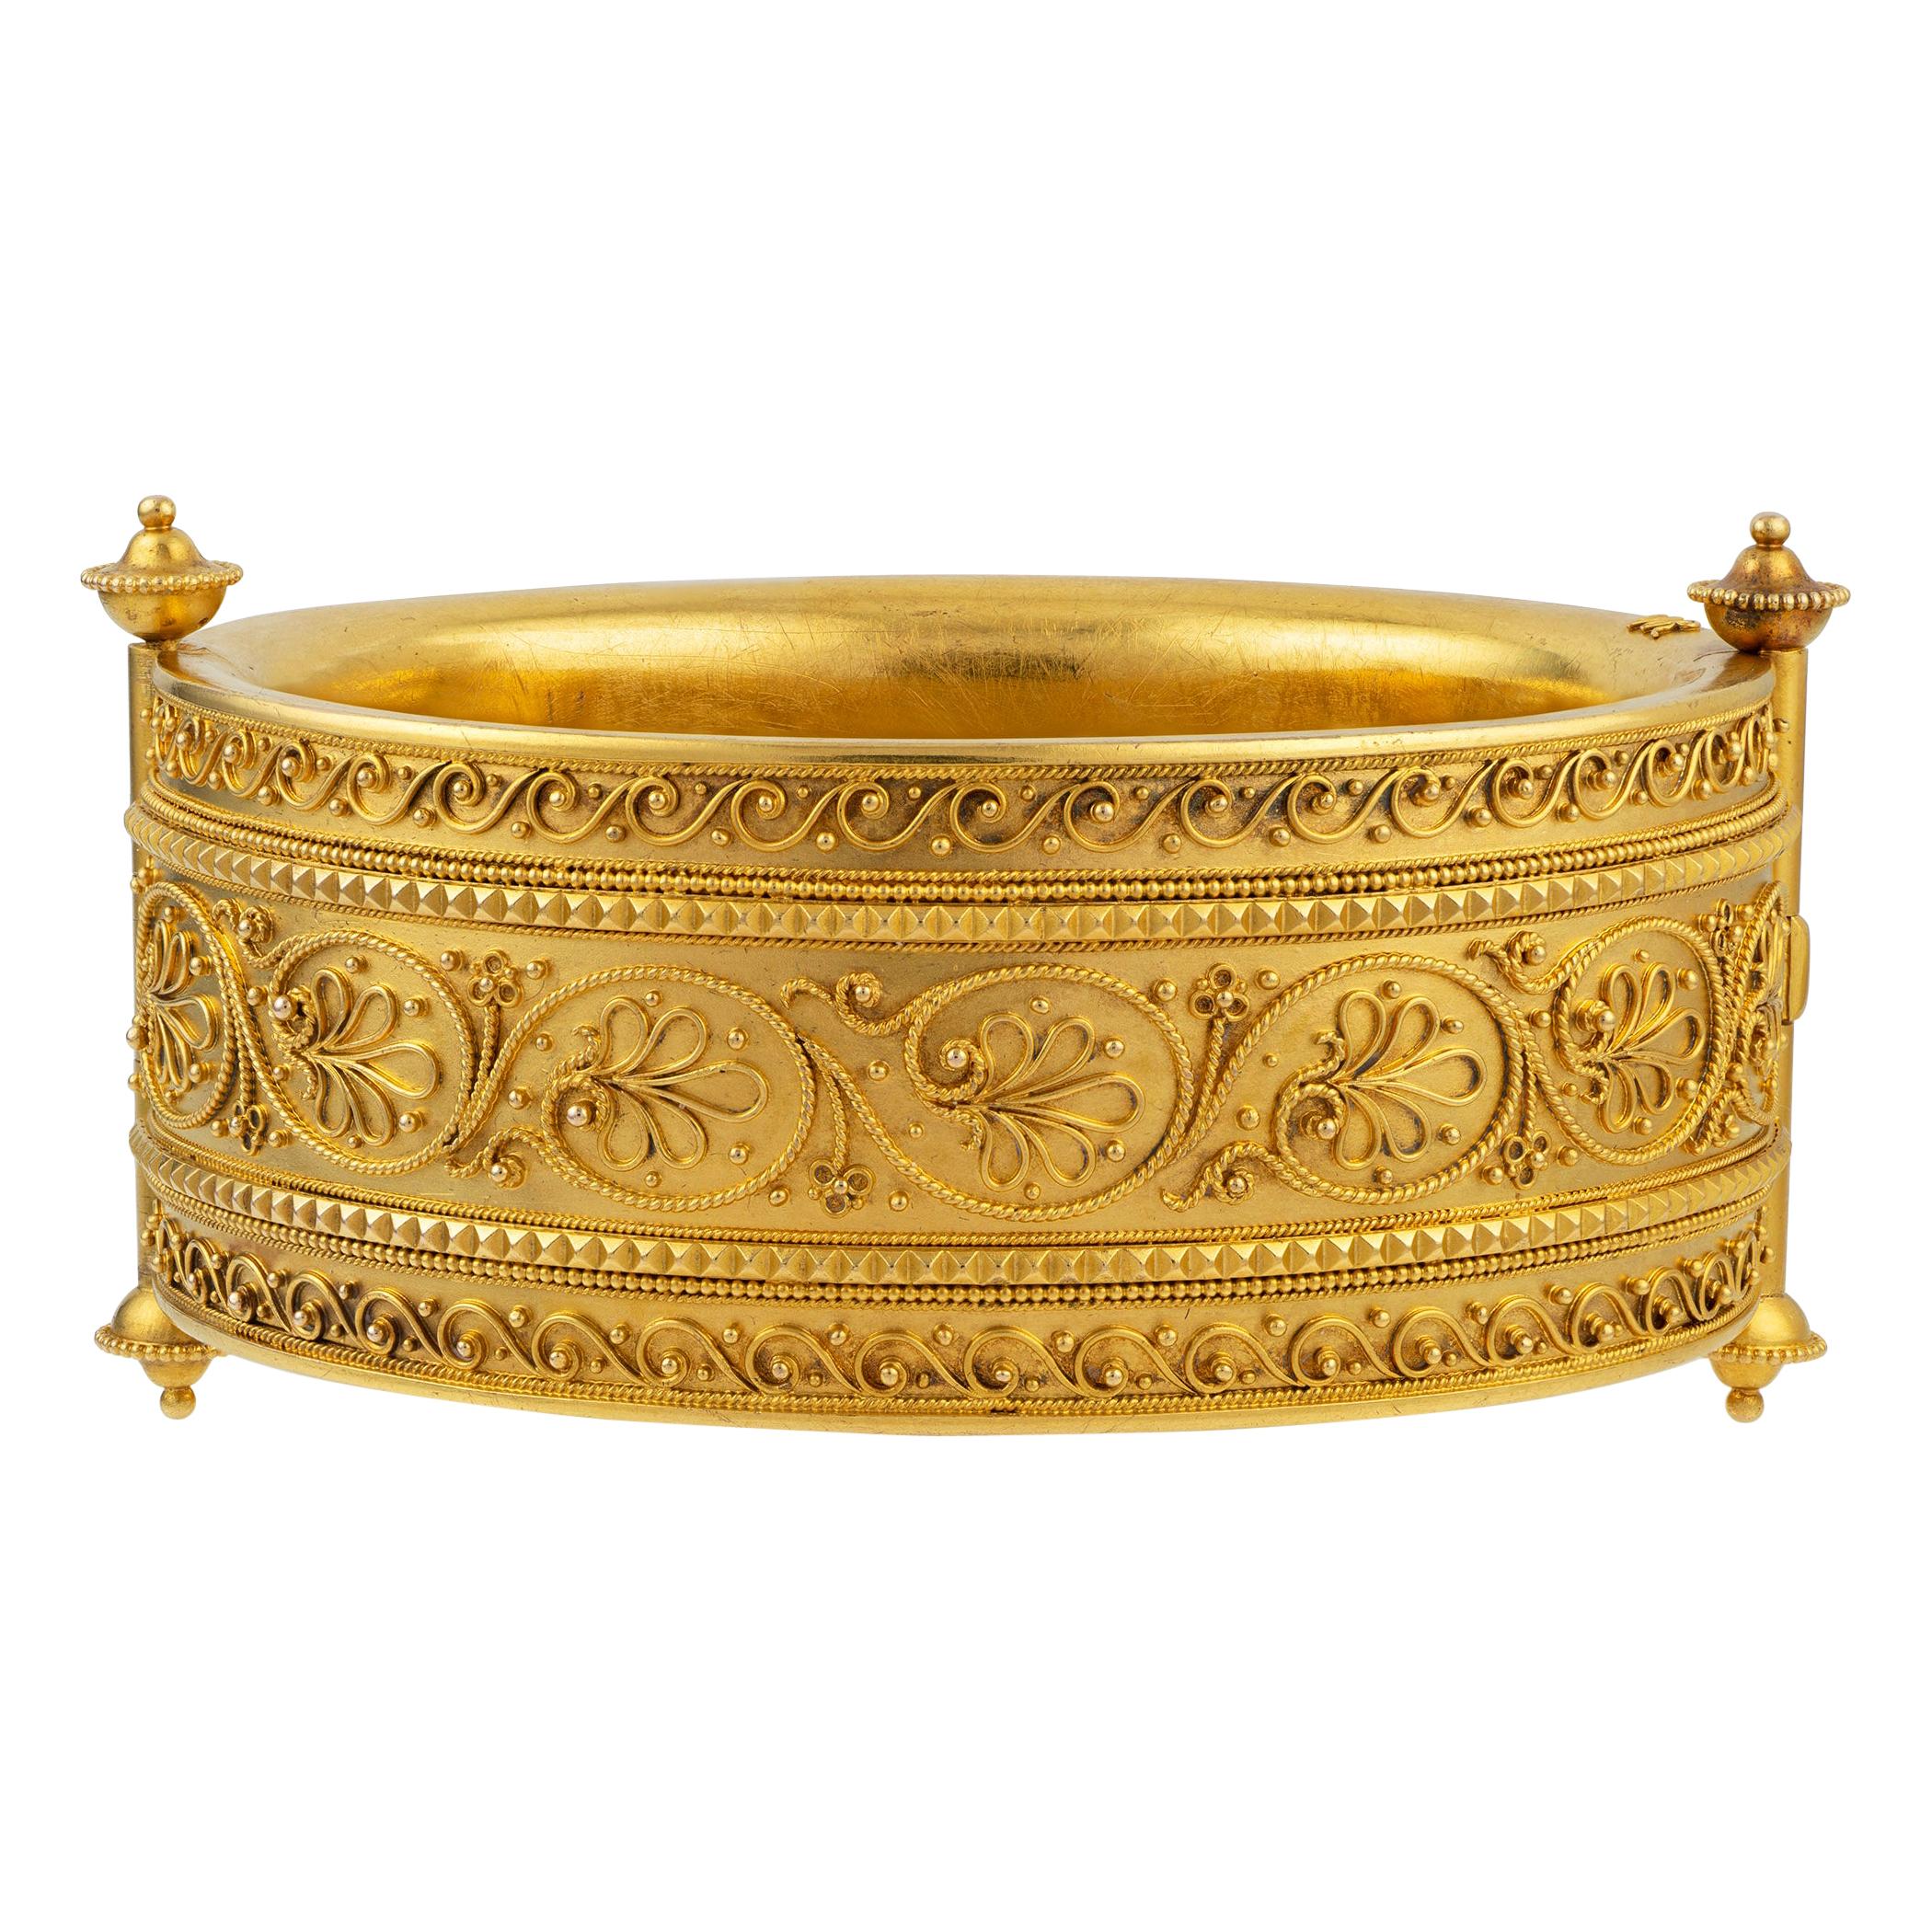 Grand bracelet jonc en or de style néo-archéologique